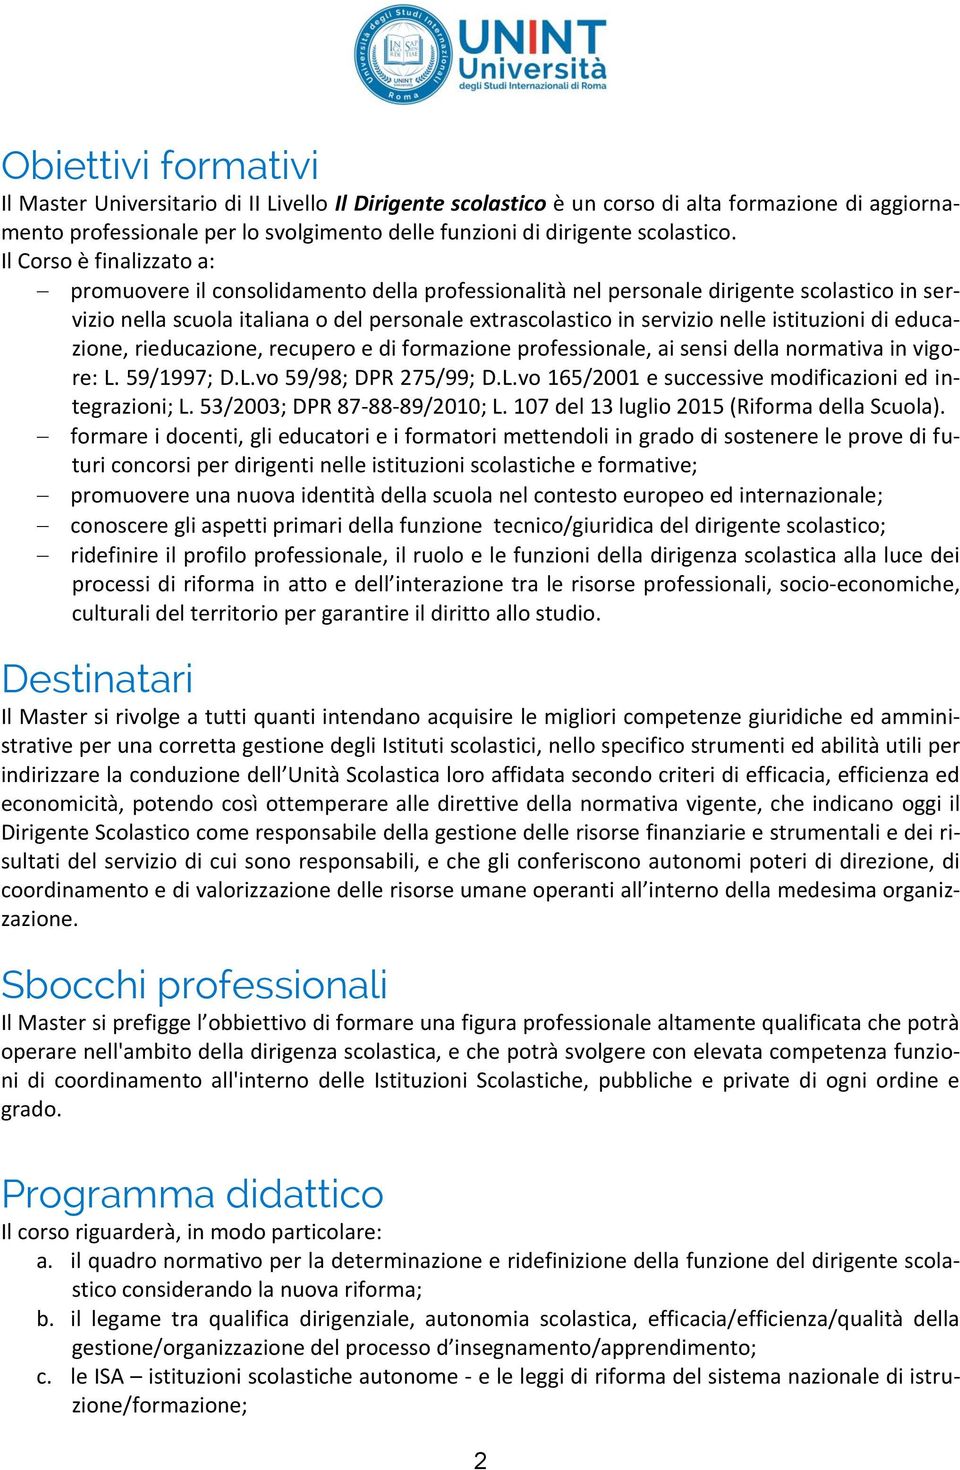 Il Corso è finalizzato a: promuovere il consolidamento della professionalità nel personale dirigente scolastico in servizio nella scuola italiana o del personale extrascolastico in servizio nelle